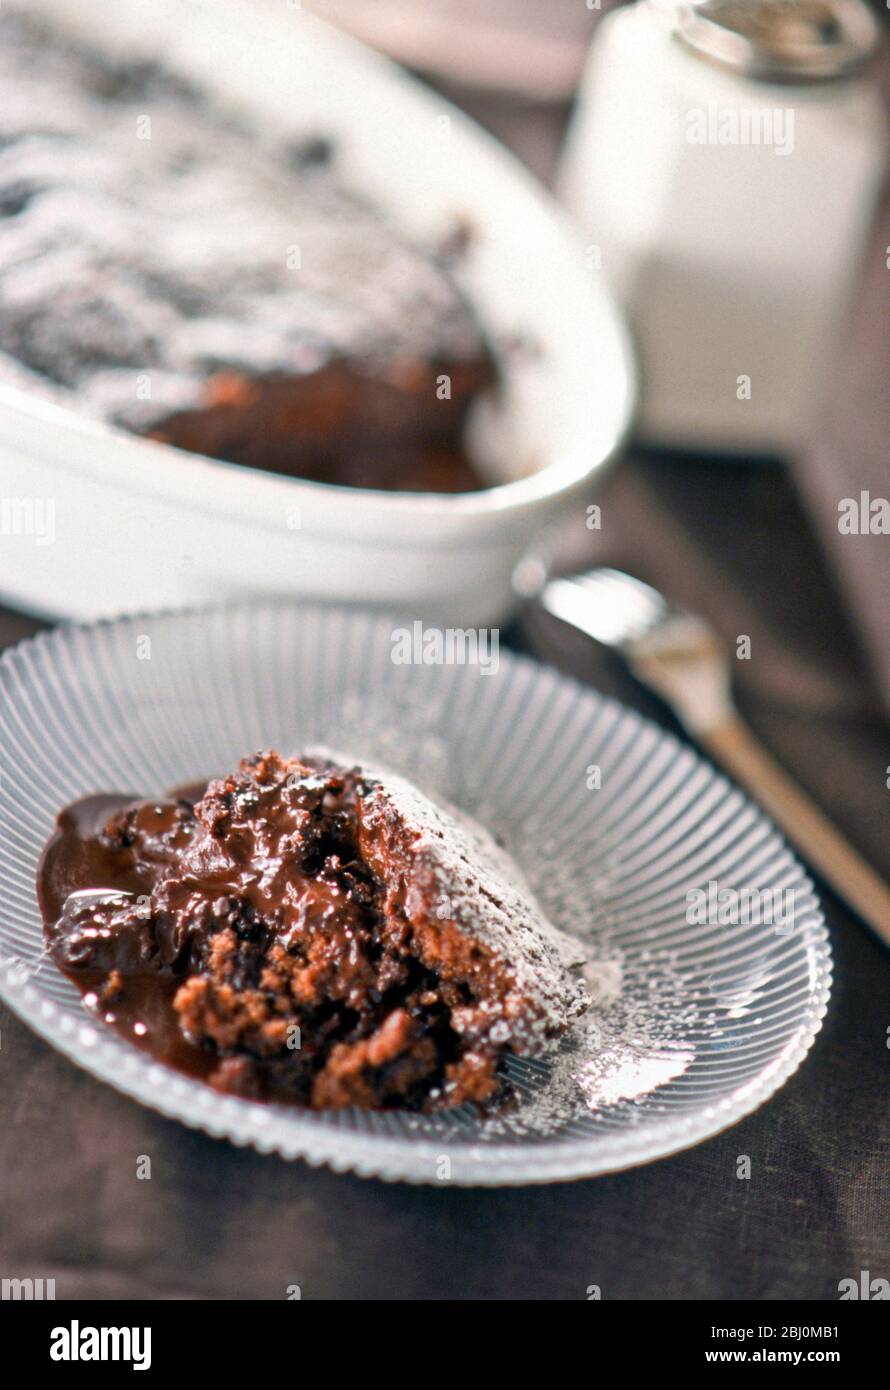 Portion heißer Schokoladenpudding auf Glasplatte mit ganzer Pudding im Hintergrund - Stockfoto